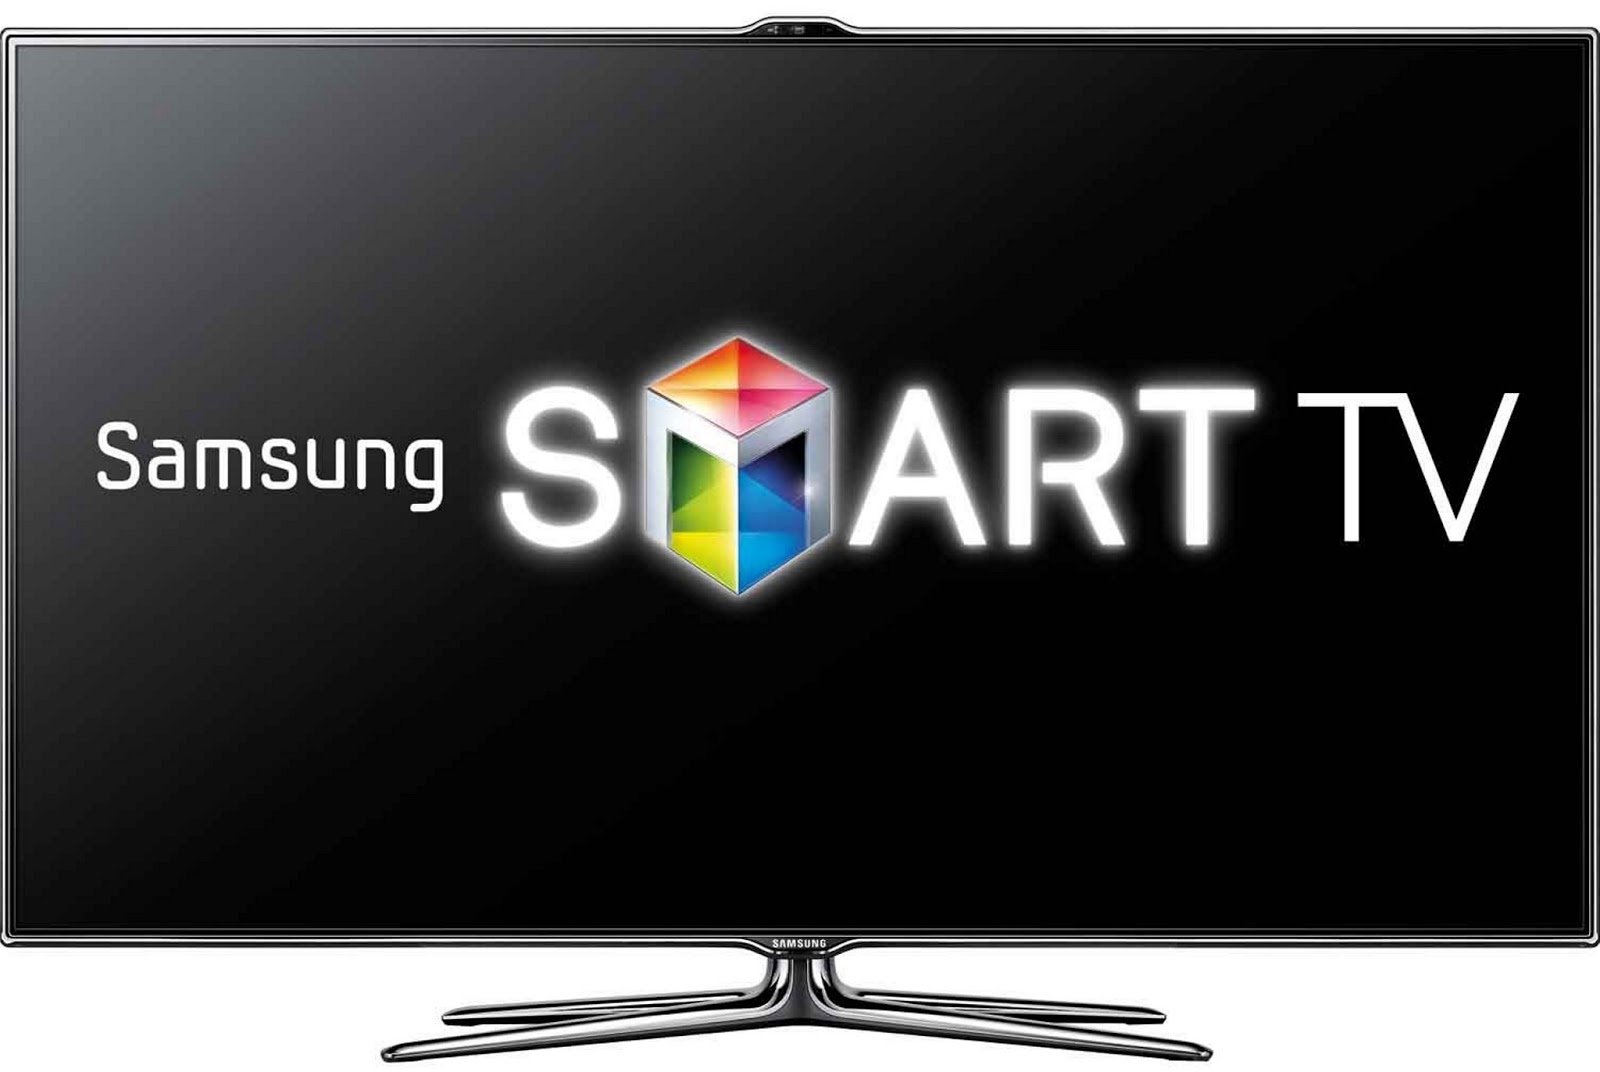 Smart TV Samsung, televizorul cu cele mai moderne caracteristici